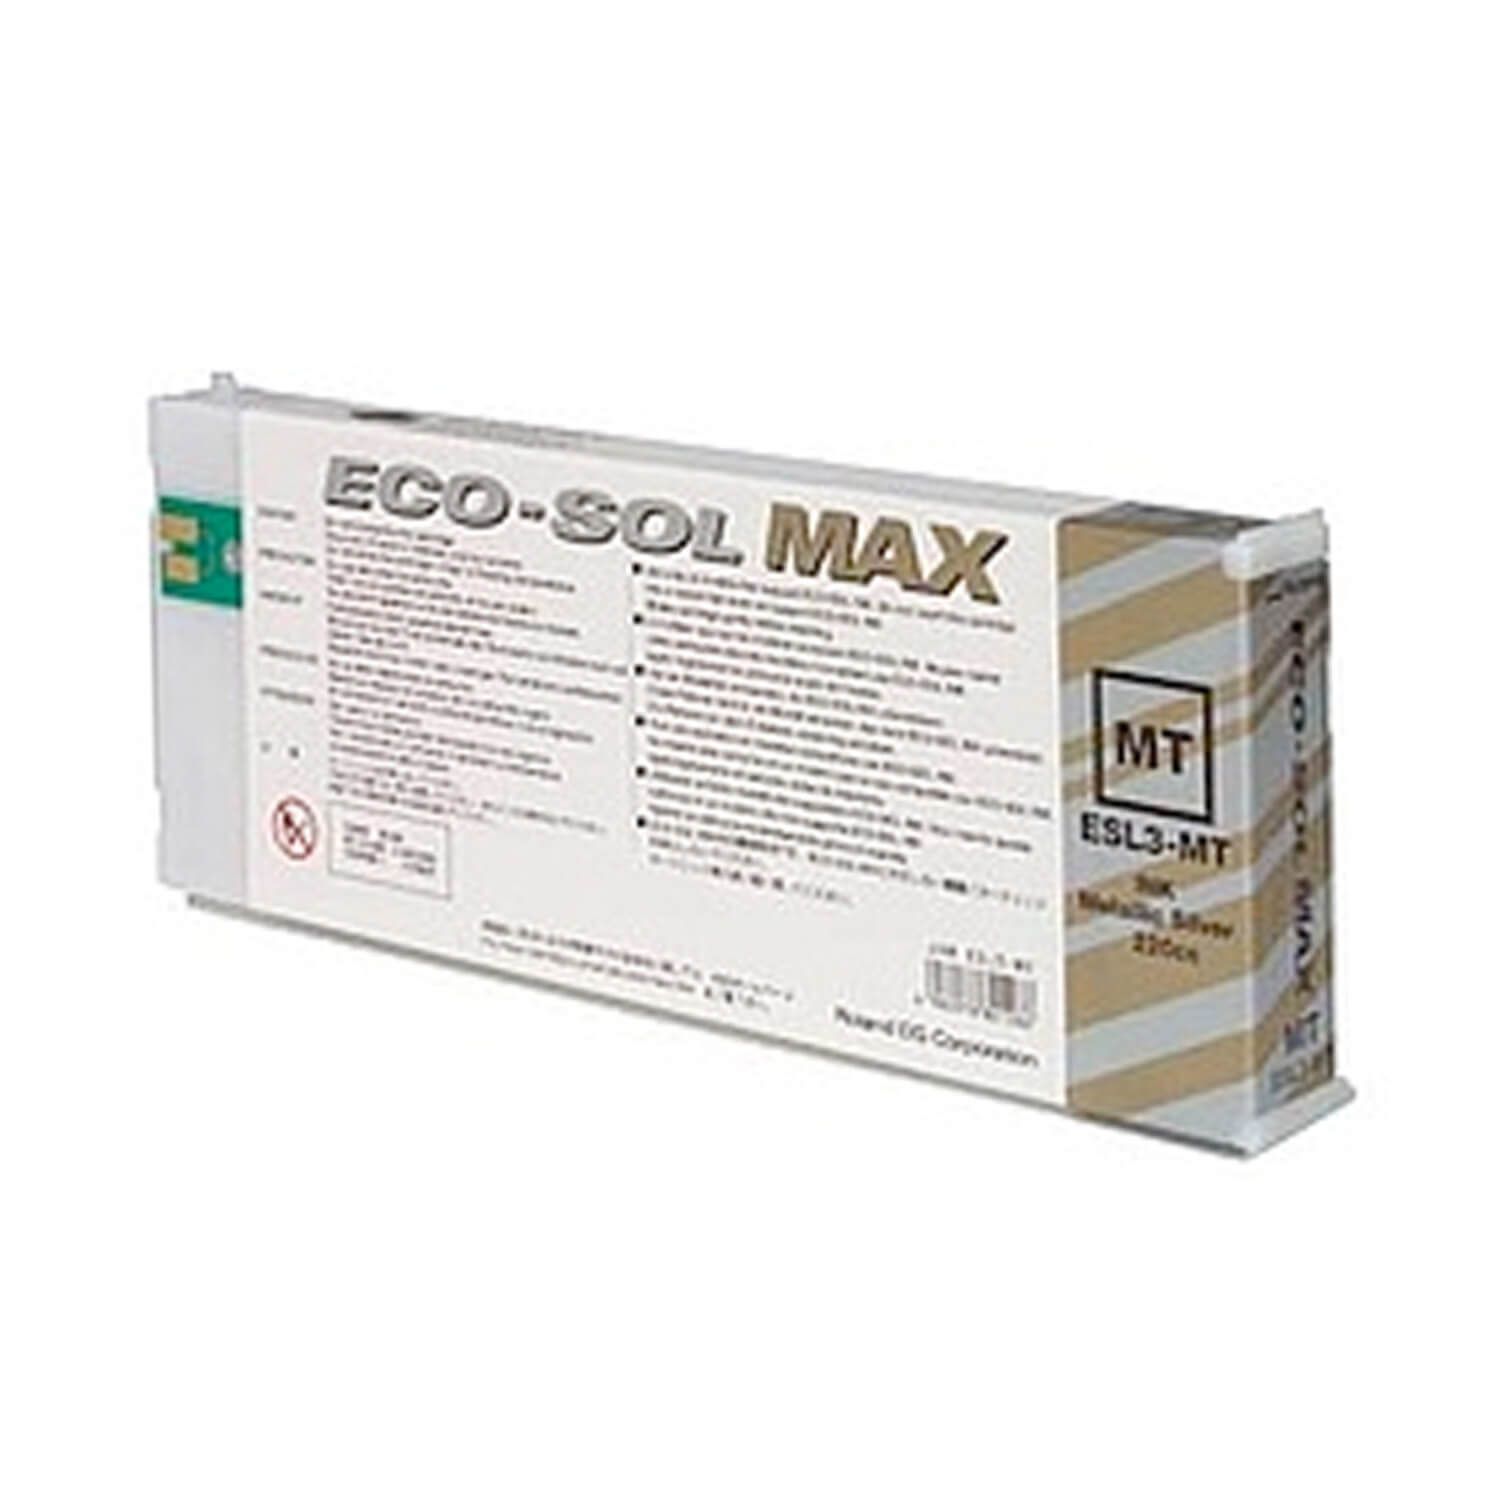 Roland DG ECO-SOL MAX Inks, 220cc Cartridges